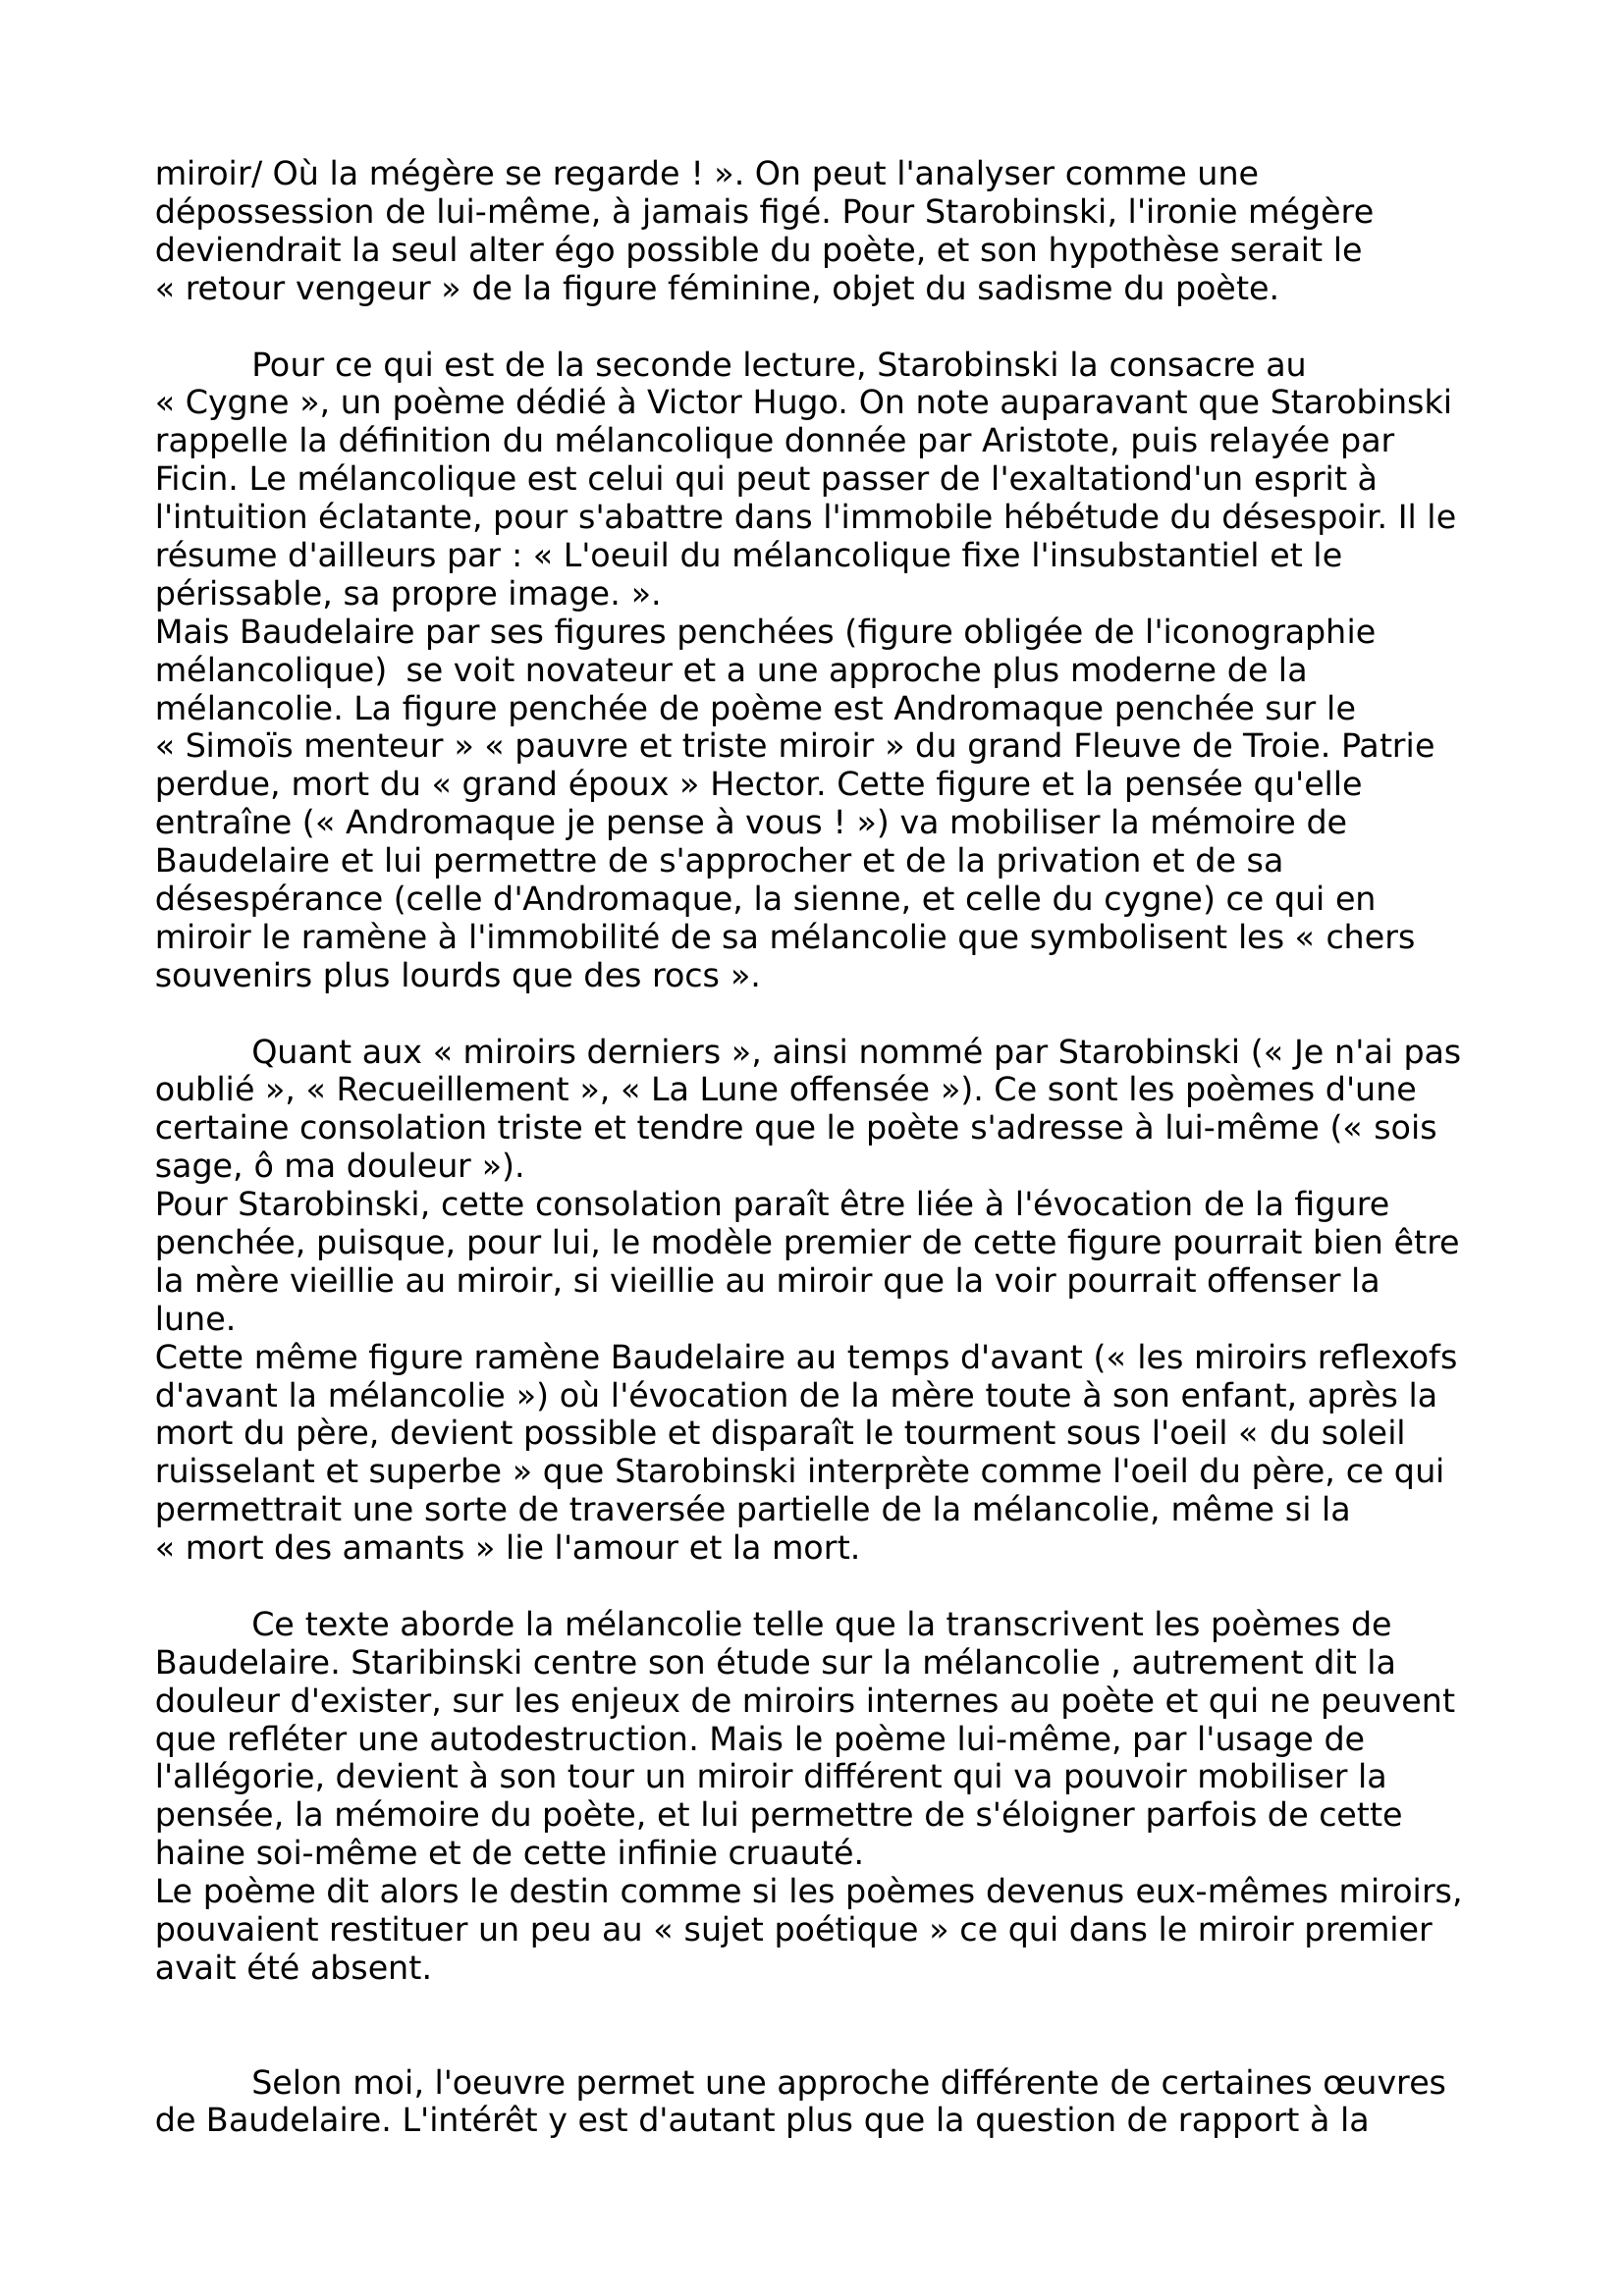 Prévisualisation du document Carrere 15/04/15 
 
Tiphaine 
 
L1-L2C 
 
Fiche de lecture 
 
La mélancolie au miroir : Trois lectures de Baudelaire, Jean Starobinski.